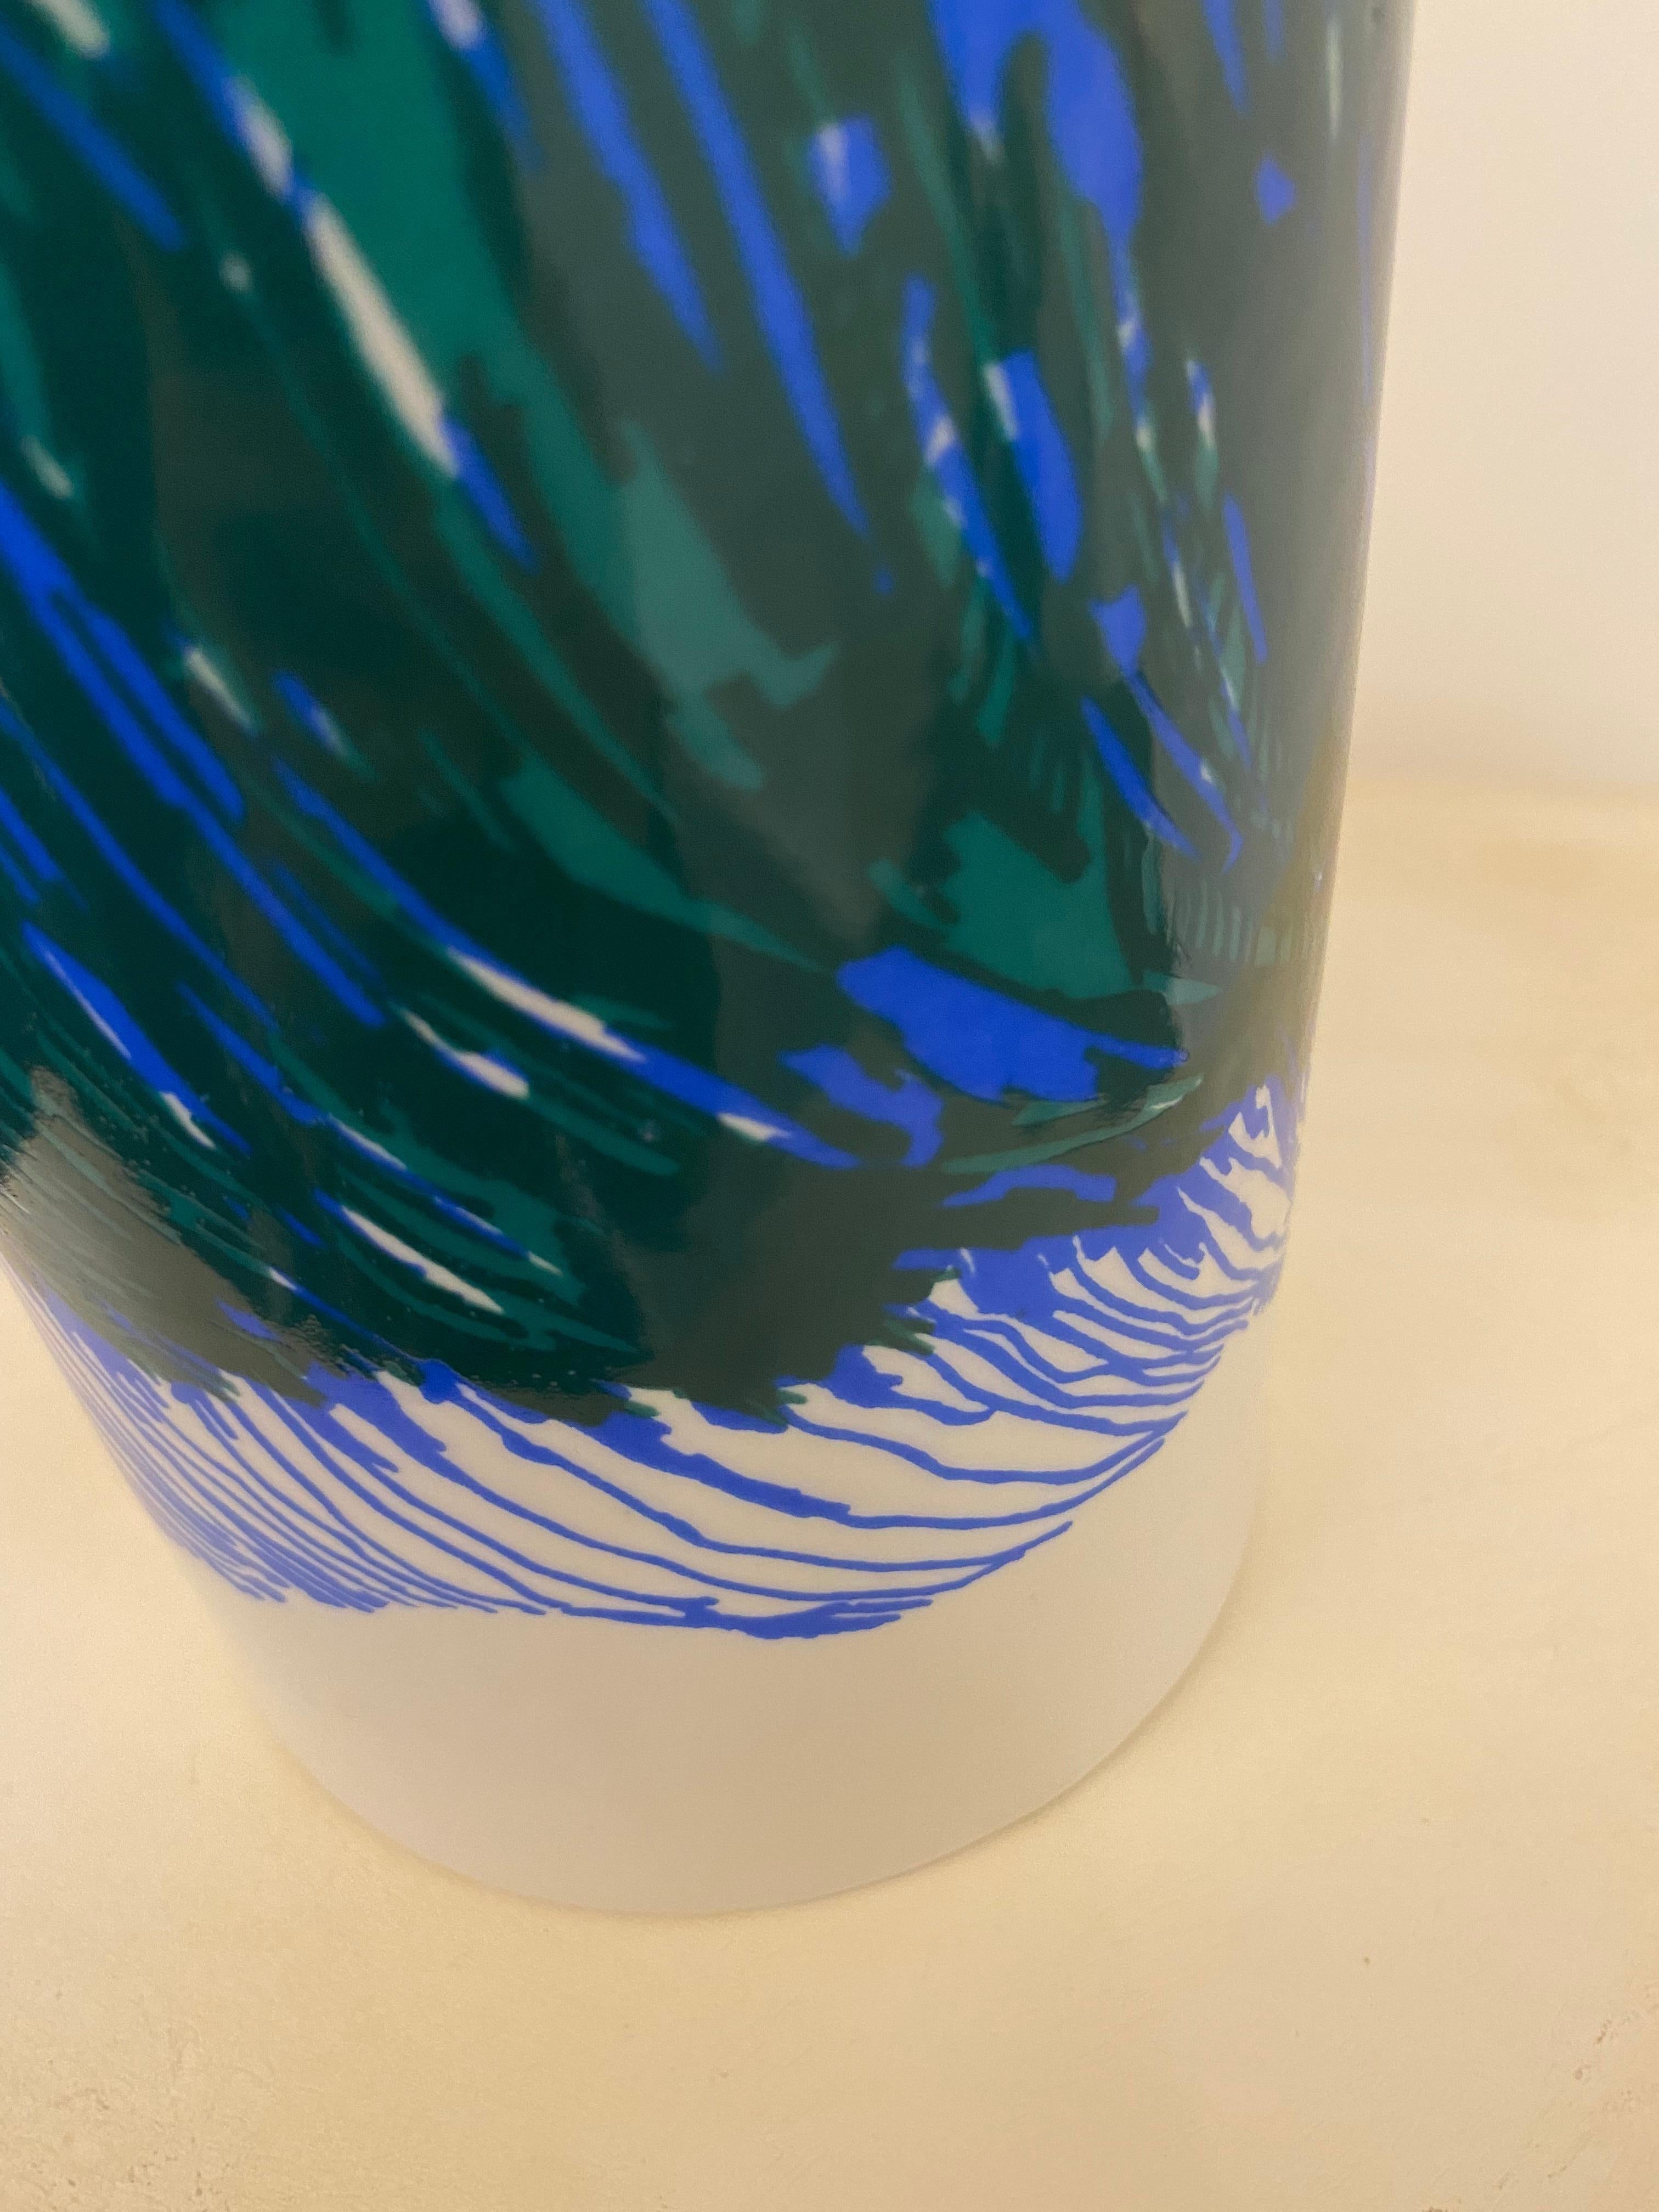 Zeitlose Tischlampen aus Keramik des schwedischen Designers Olle Alberious aus den 60er Jahren.
Vollständig aus Porzellan gefertigt und mit organischen Mustern in Blau- und Grüntönen verziert.

Über Olle Alberius:
Alberius war ein schwedischer